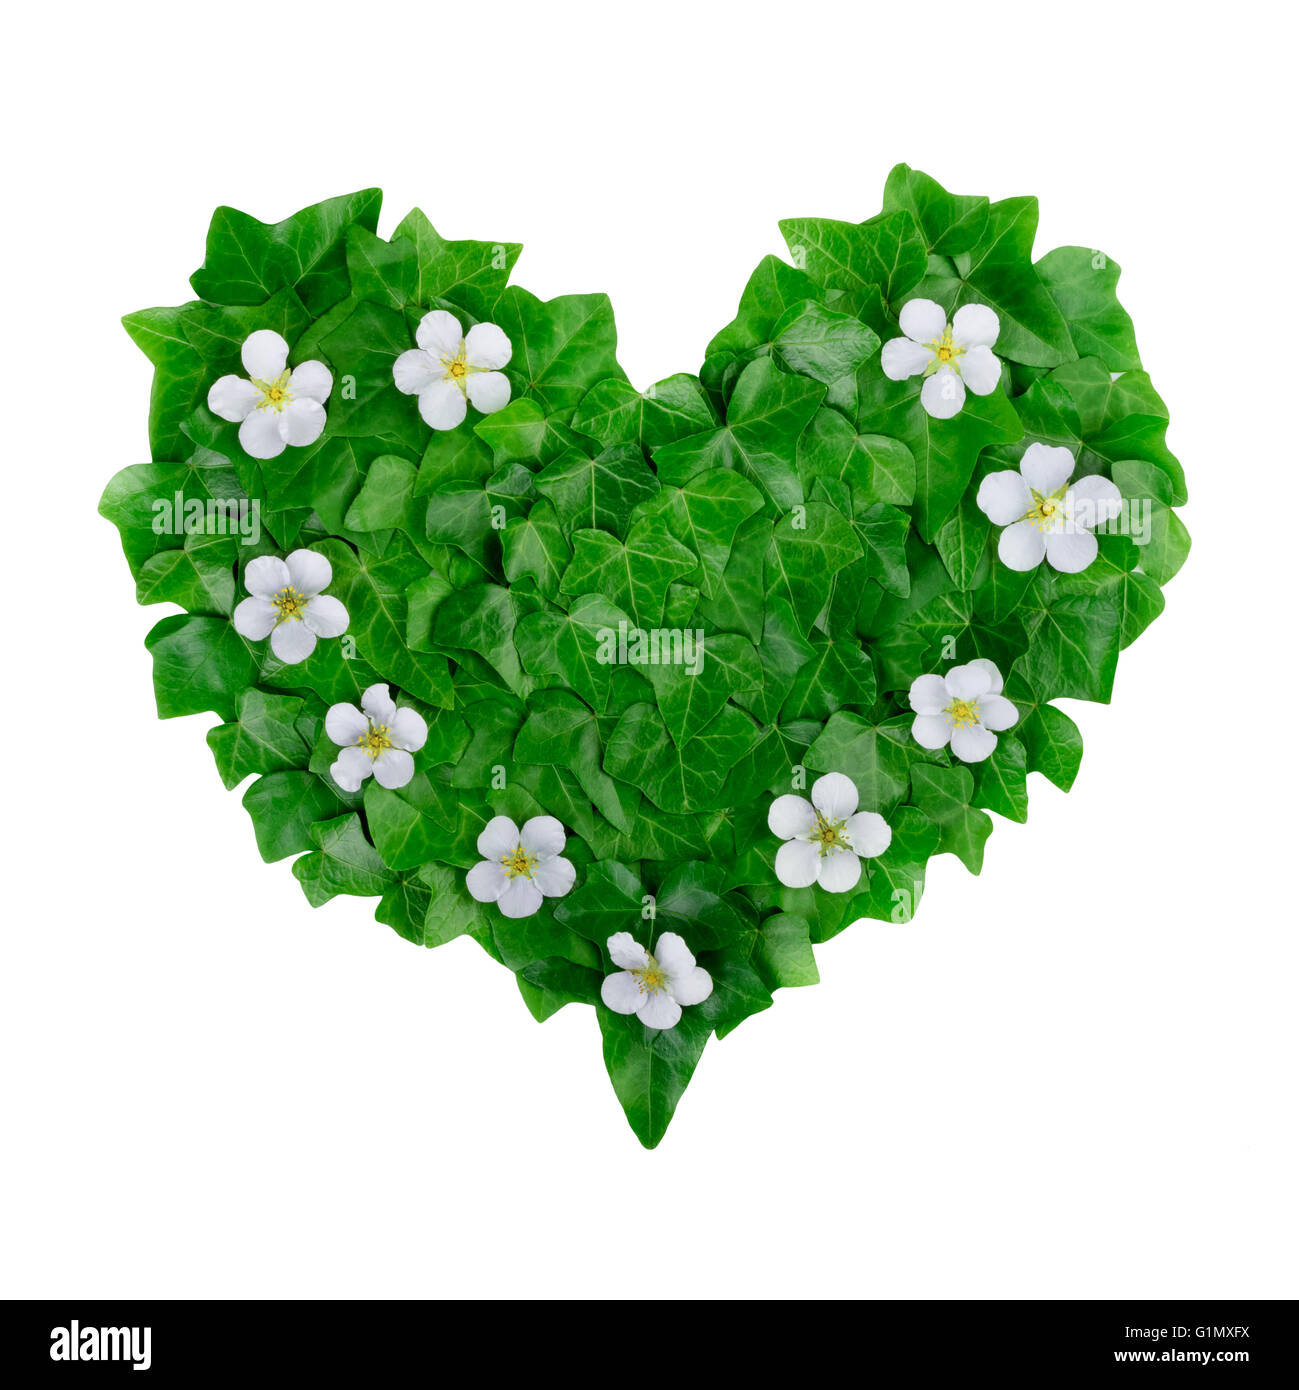 Natural green heart pattern faite de feuilles de lierre et de fleurs blanches. Mise à plat. Banque D'Images